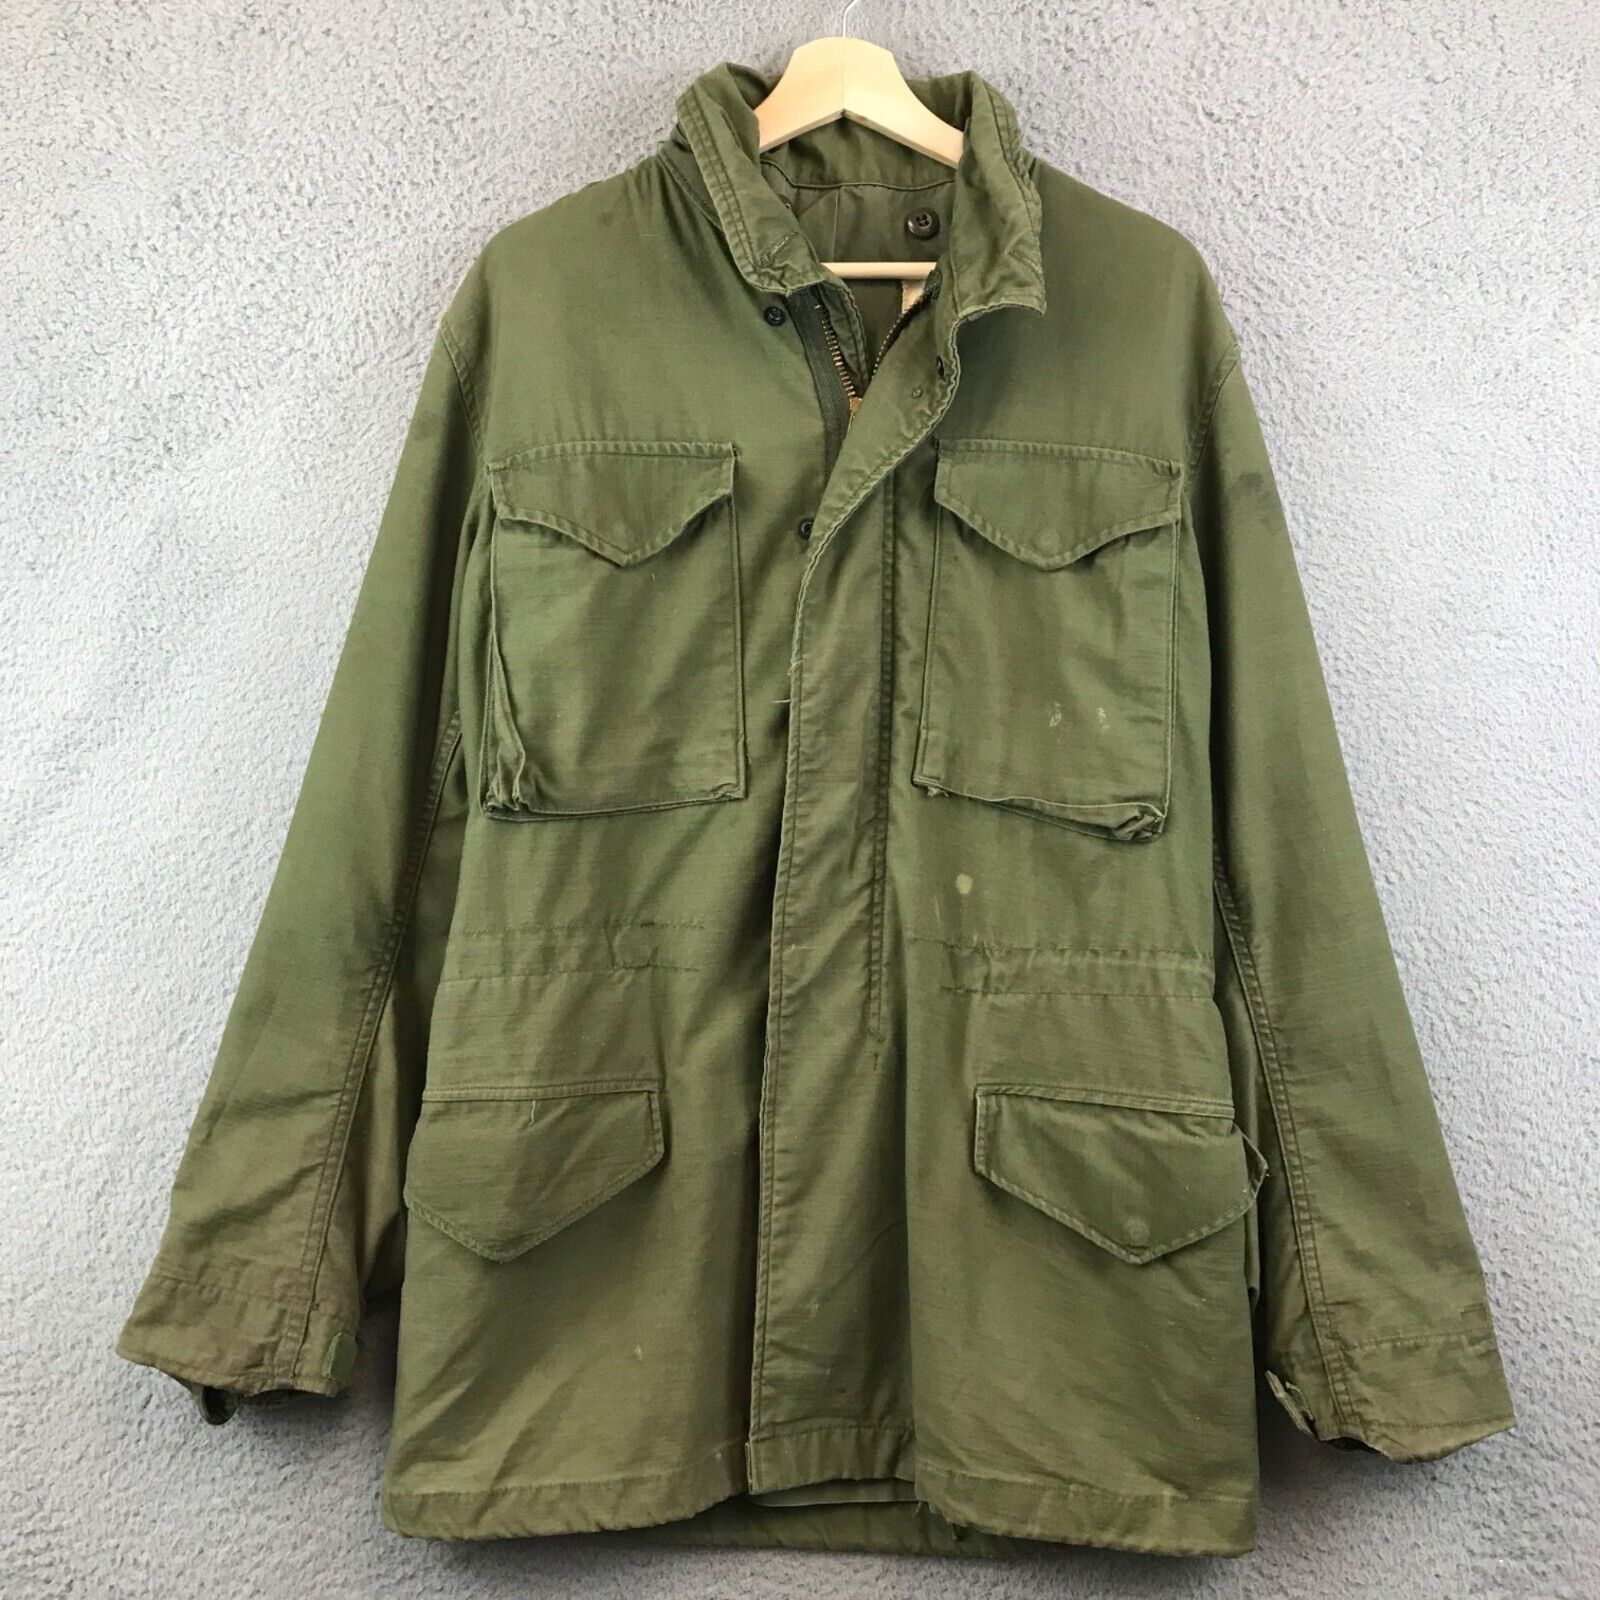 Vintage 60s M65 Field jacket Green og107 military